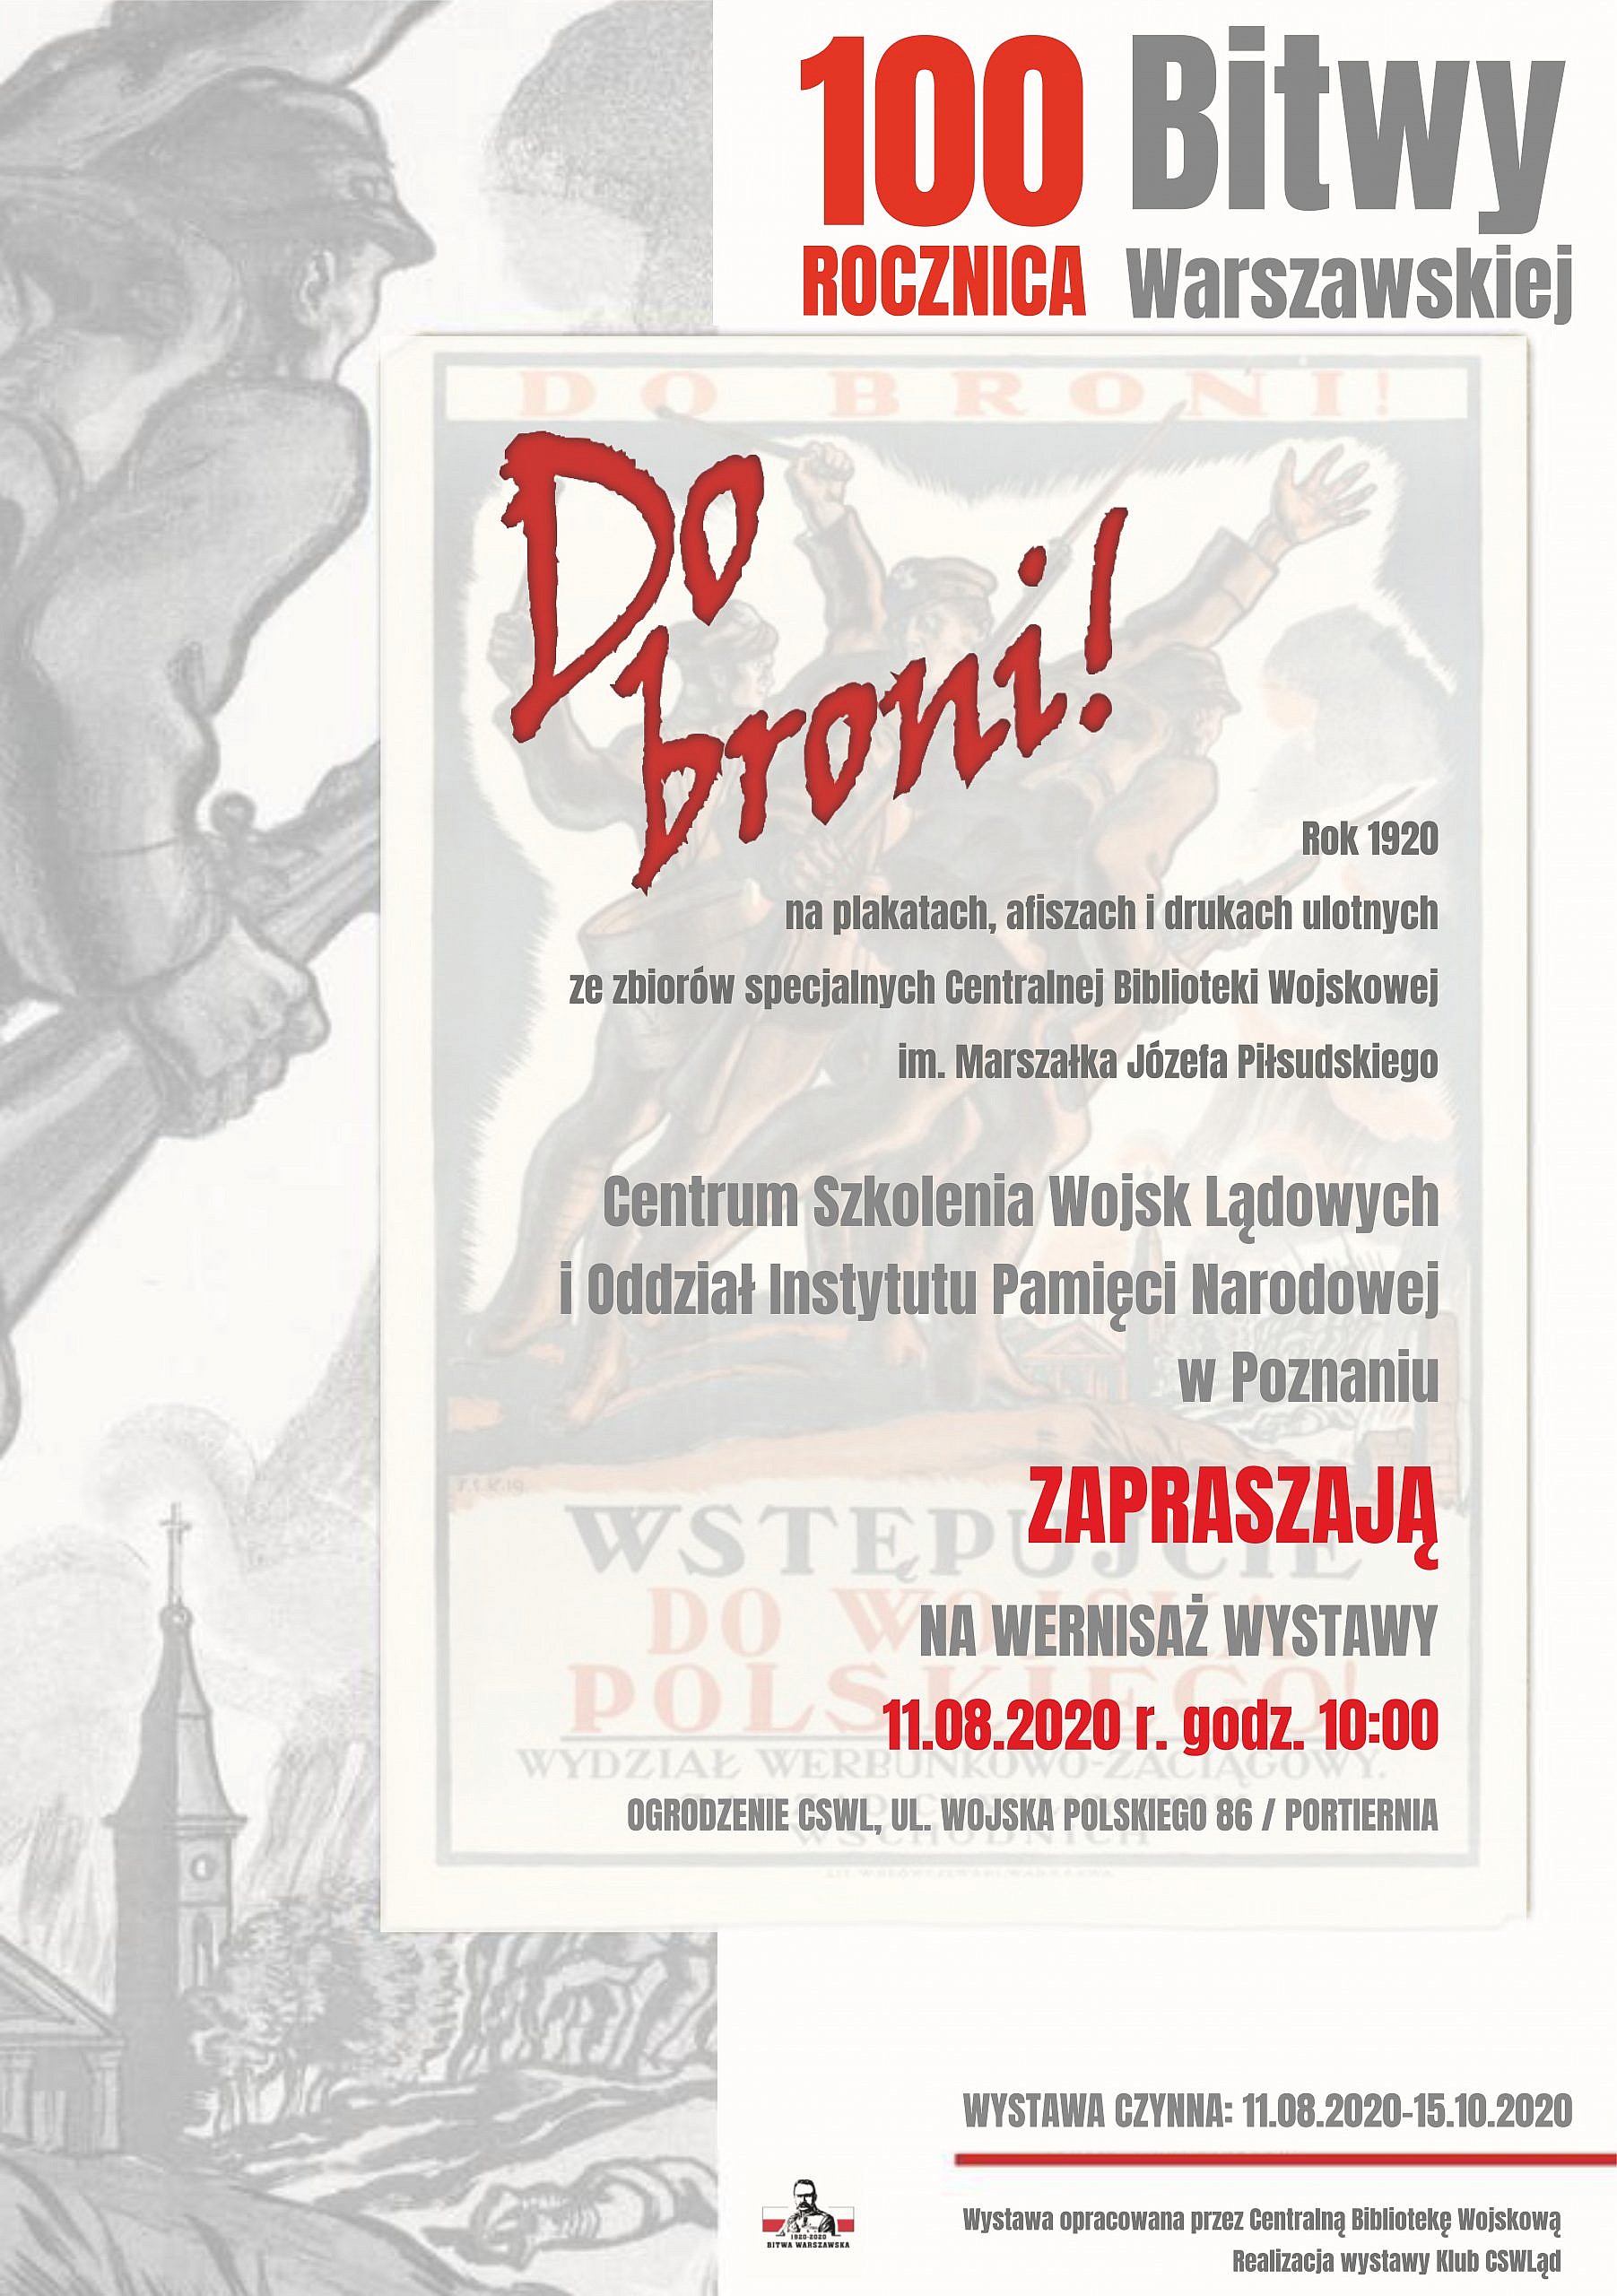 Plakat Bitwa Warszawska ver02 scaled - Wojsko zaprasza z okazji 100. rocznicy Bitwy Warszawskiej